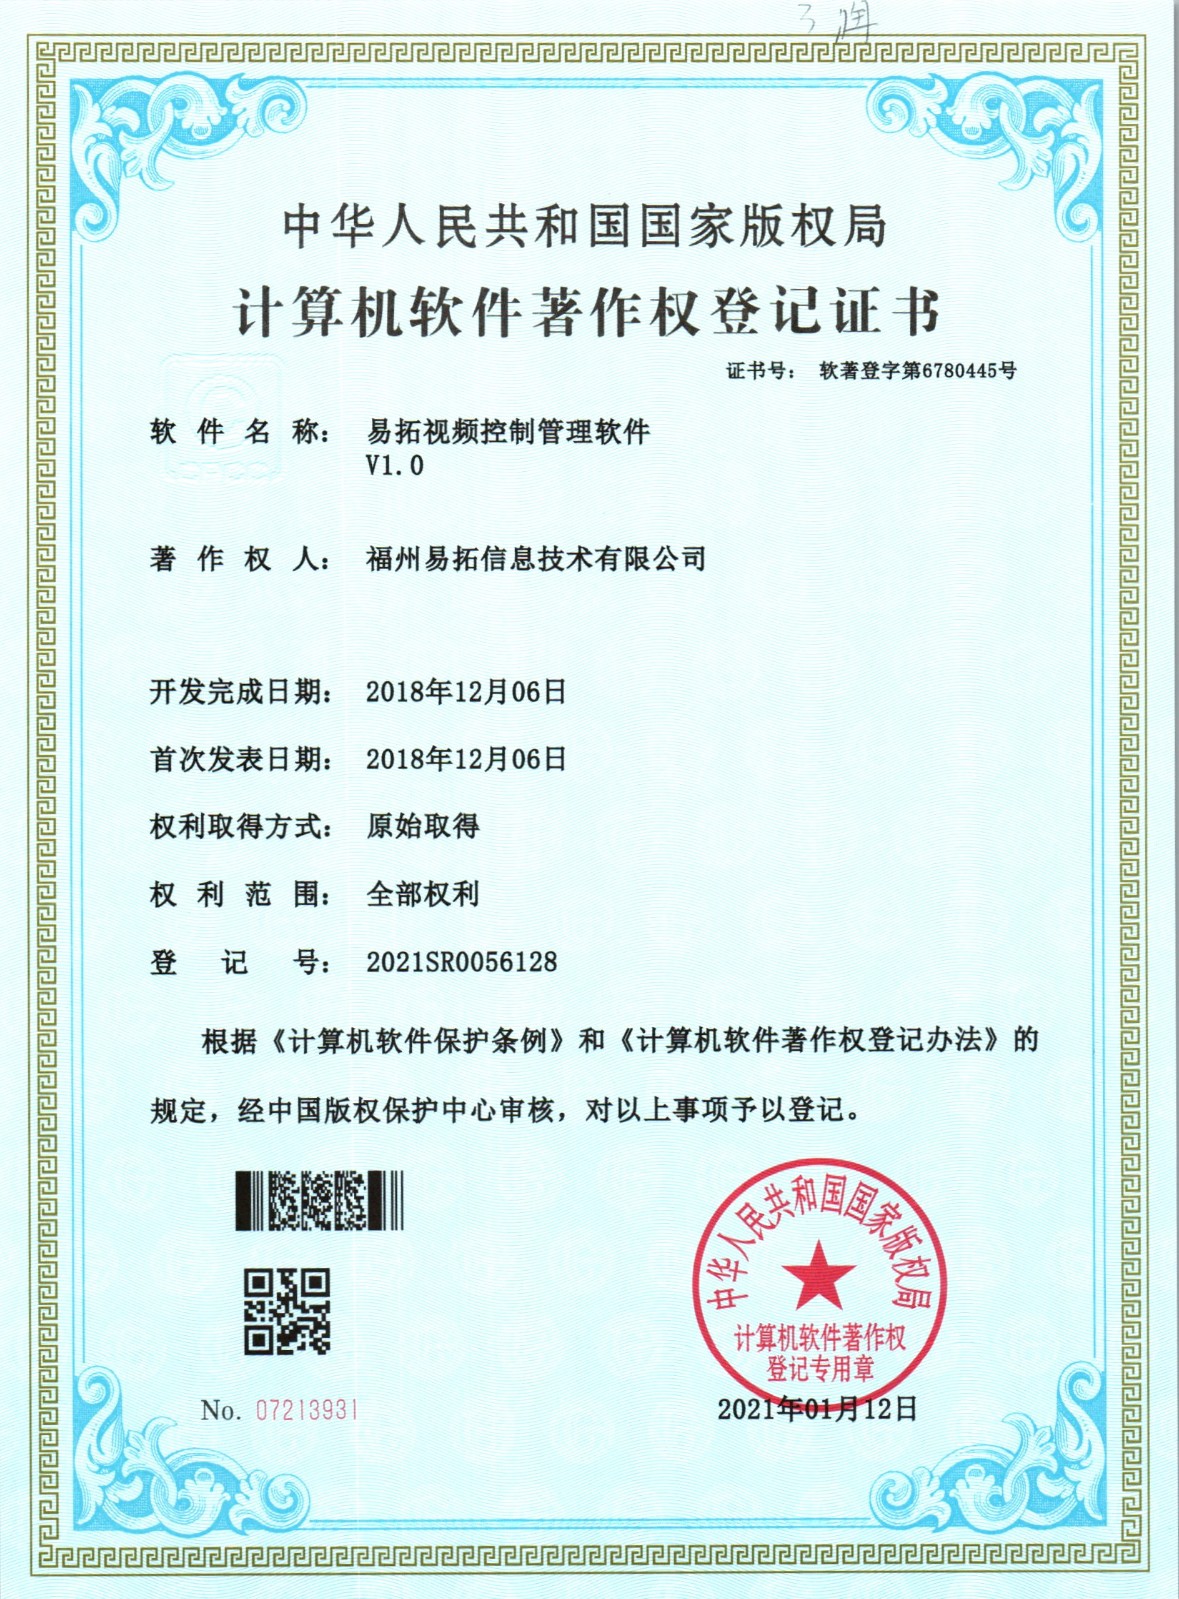 恭喜“易拓视频控制管理软件V1.0” 获得国家计算机软件著作权登记证书